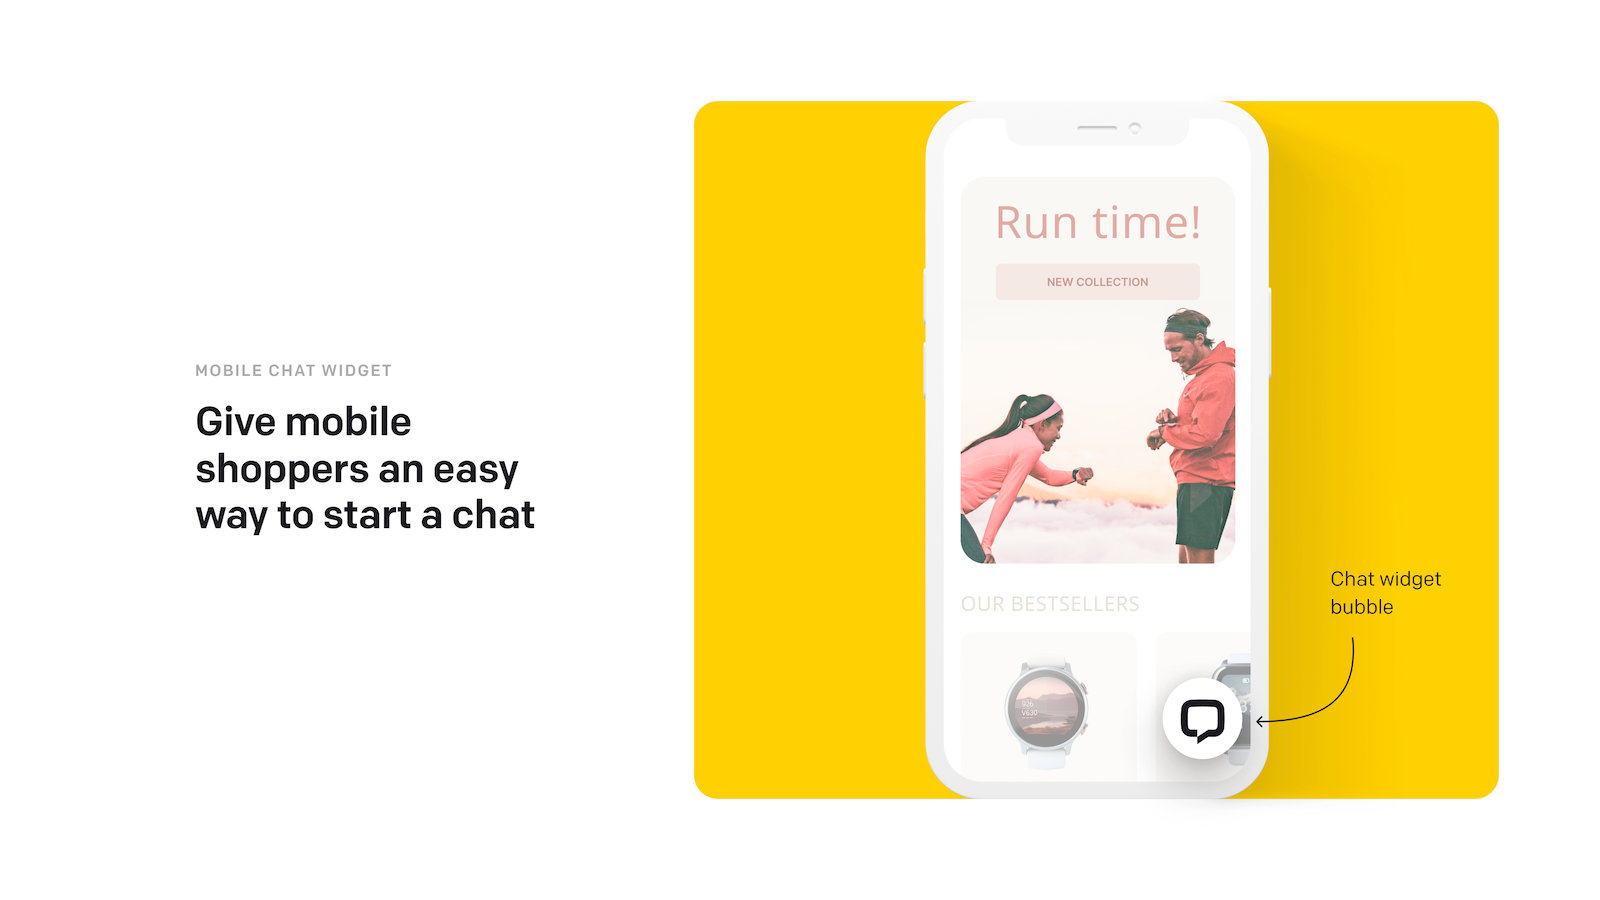 Un widget de chat que los compradores móviles pueden usar para iniciar un chat.